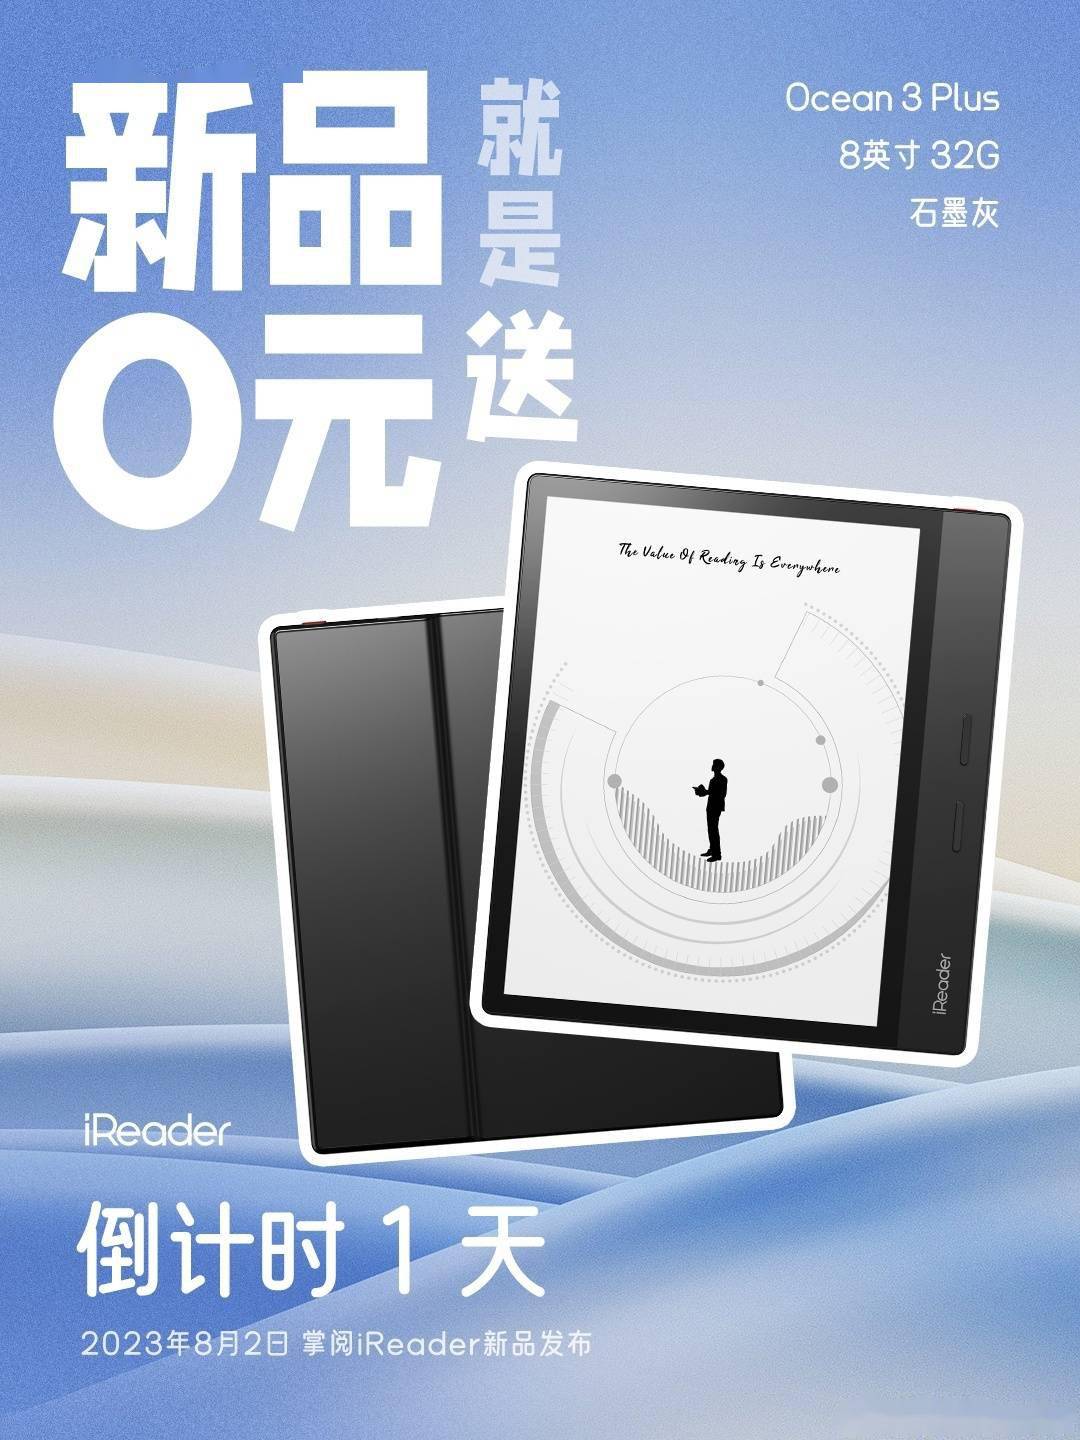 掌阅今日公布新款Ocean 3 Plus电纸书 将在8月2日发布